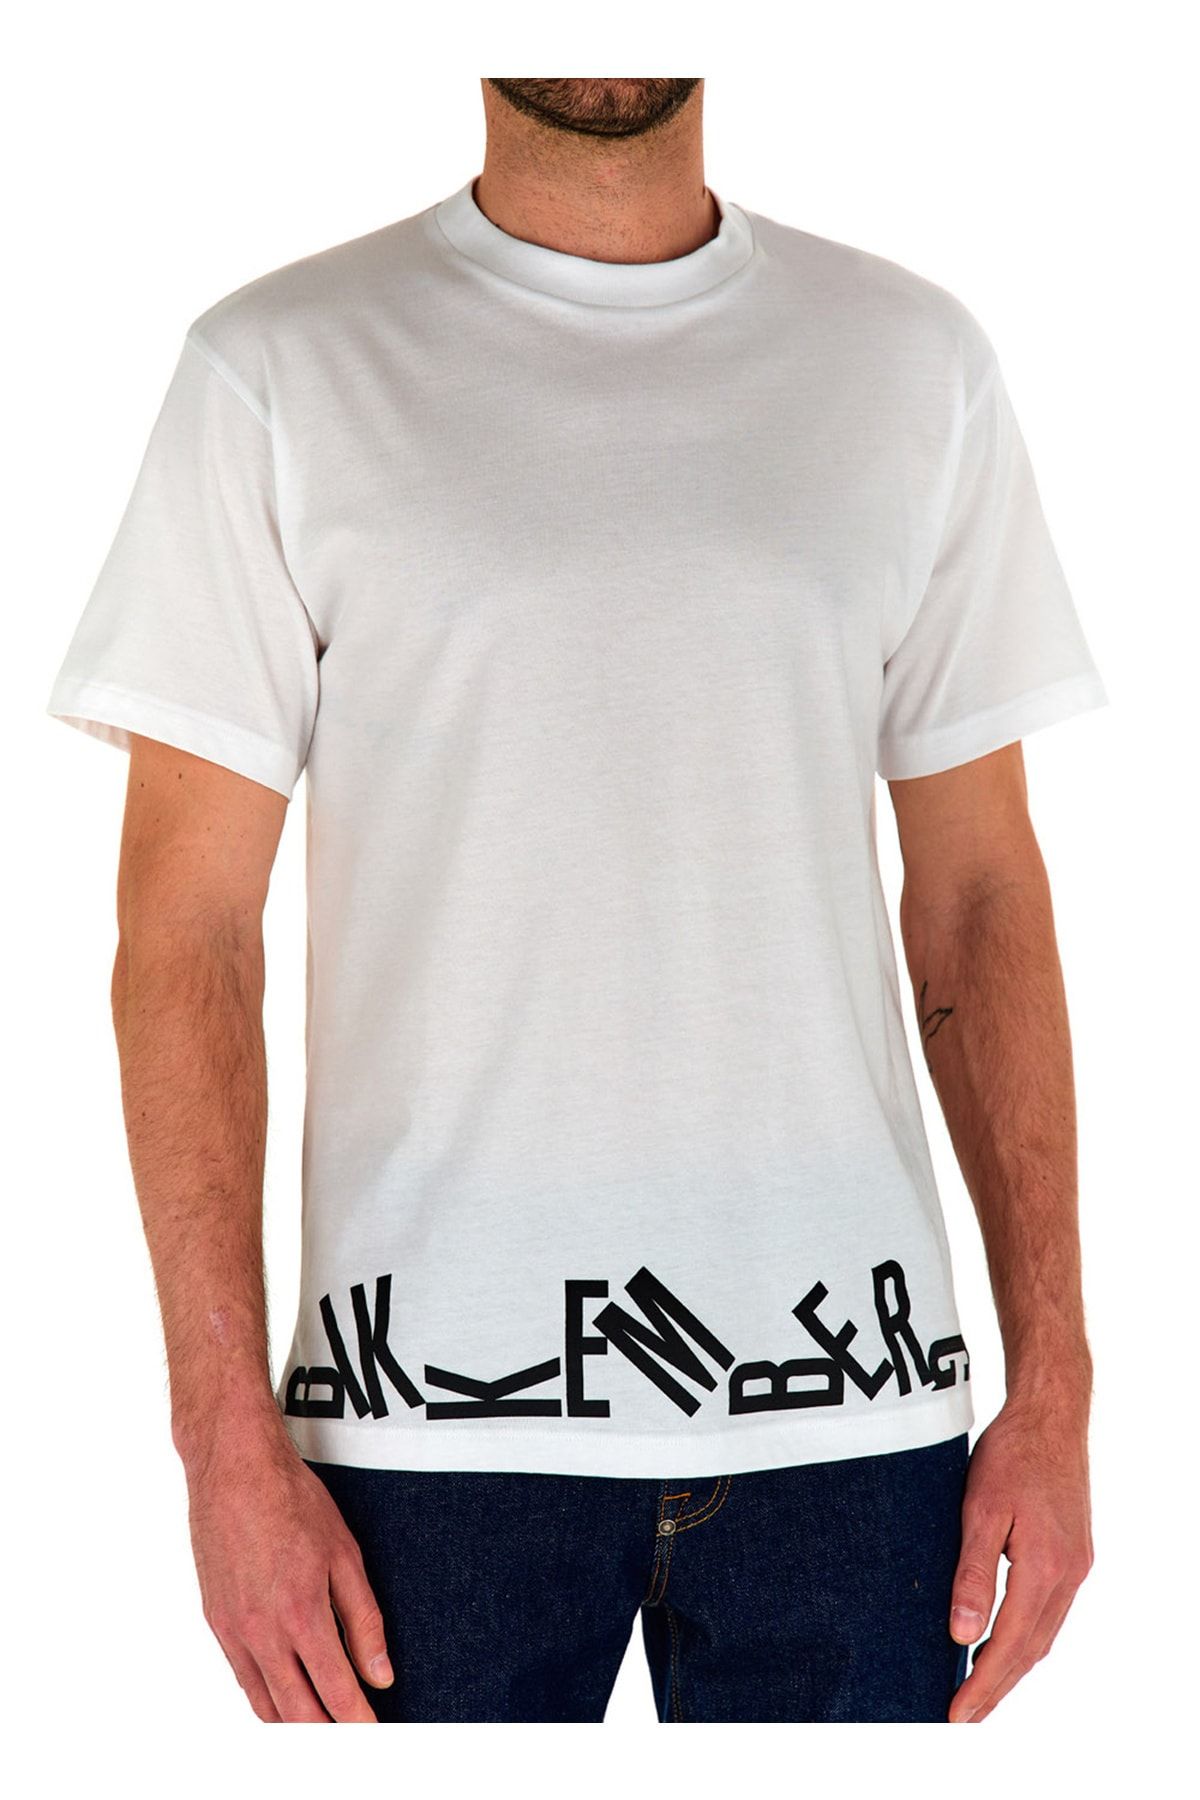 Bikkembergs Beyaz Erkek T-Shirt C 4 114 23